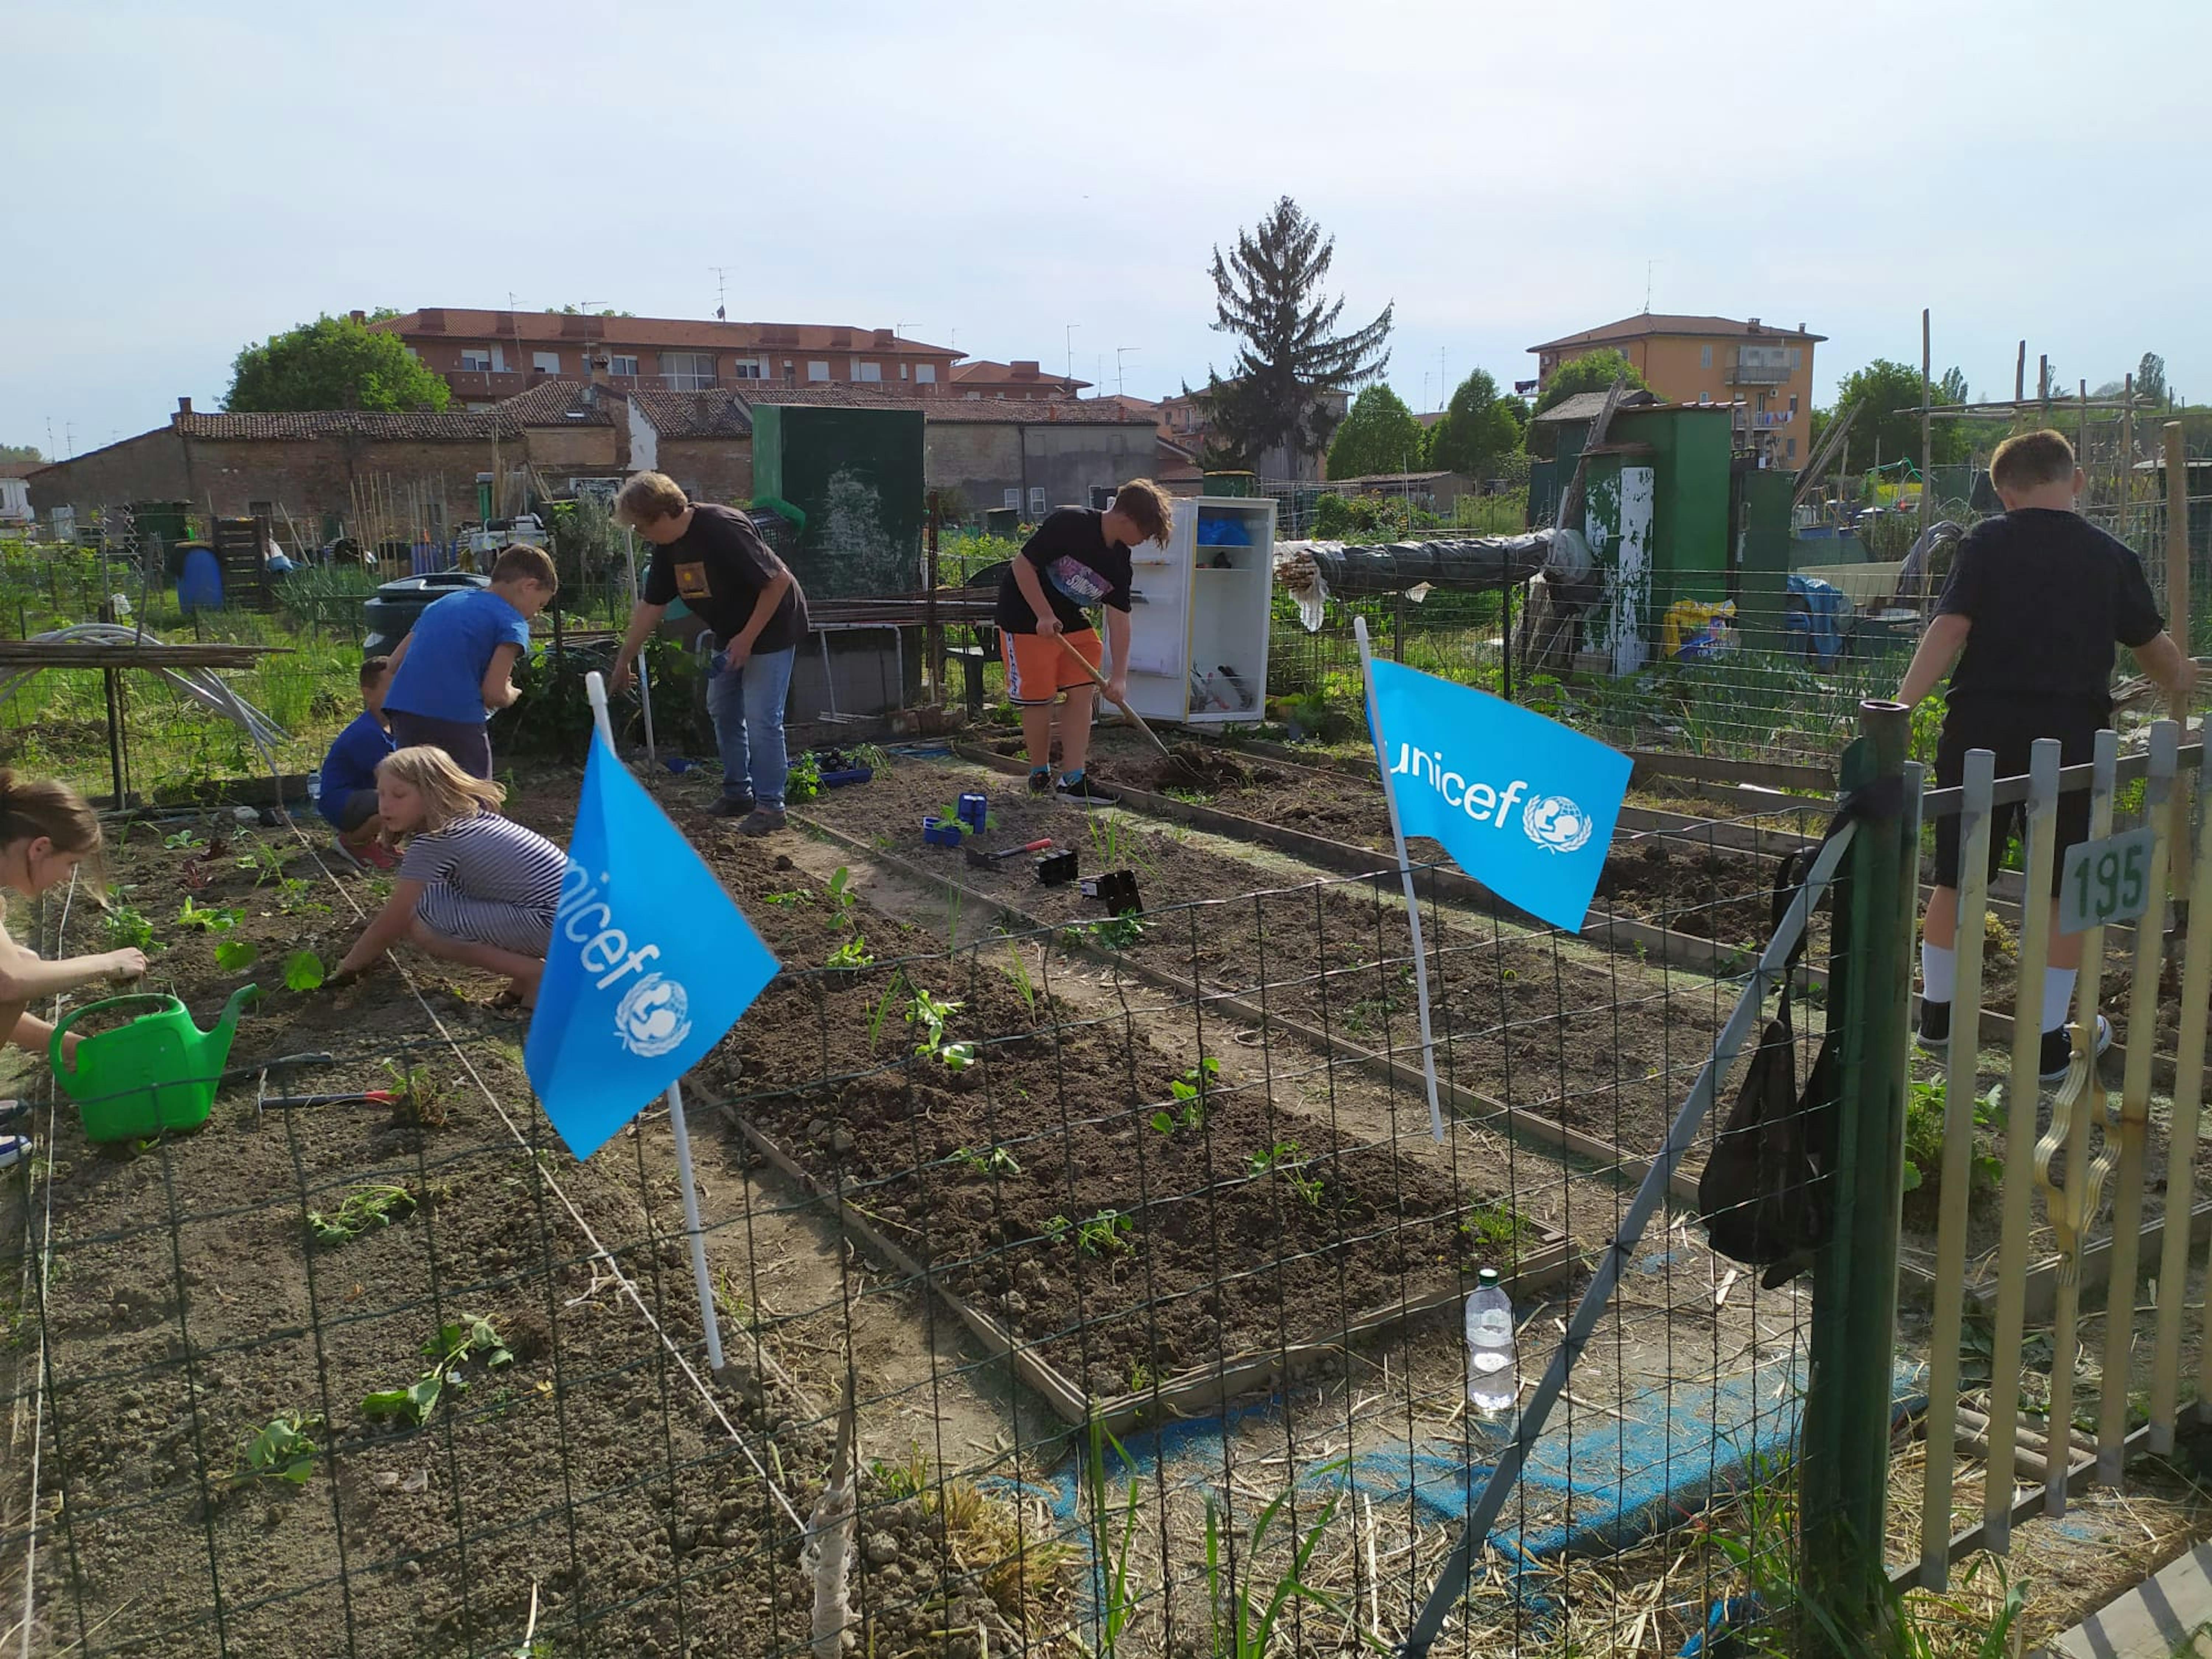 Il laboratorio orto, organizzato da UNICEF Ferrara, ha coinvolto  i bambini ucraini che hanno seminato, zappato, estirpato e raccolto ortaggi sia presso orti cittadini, che musei, giardini, spazi urbani. 